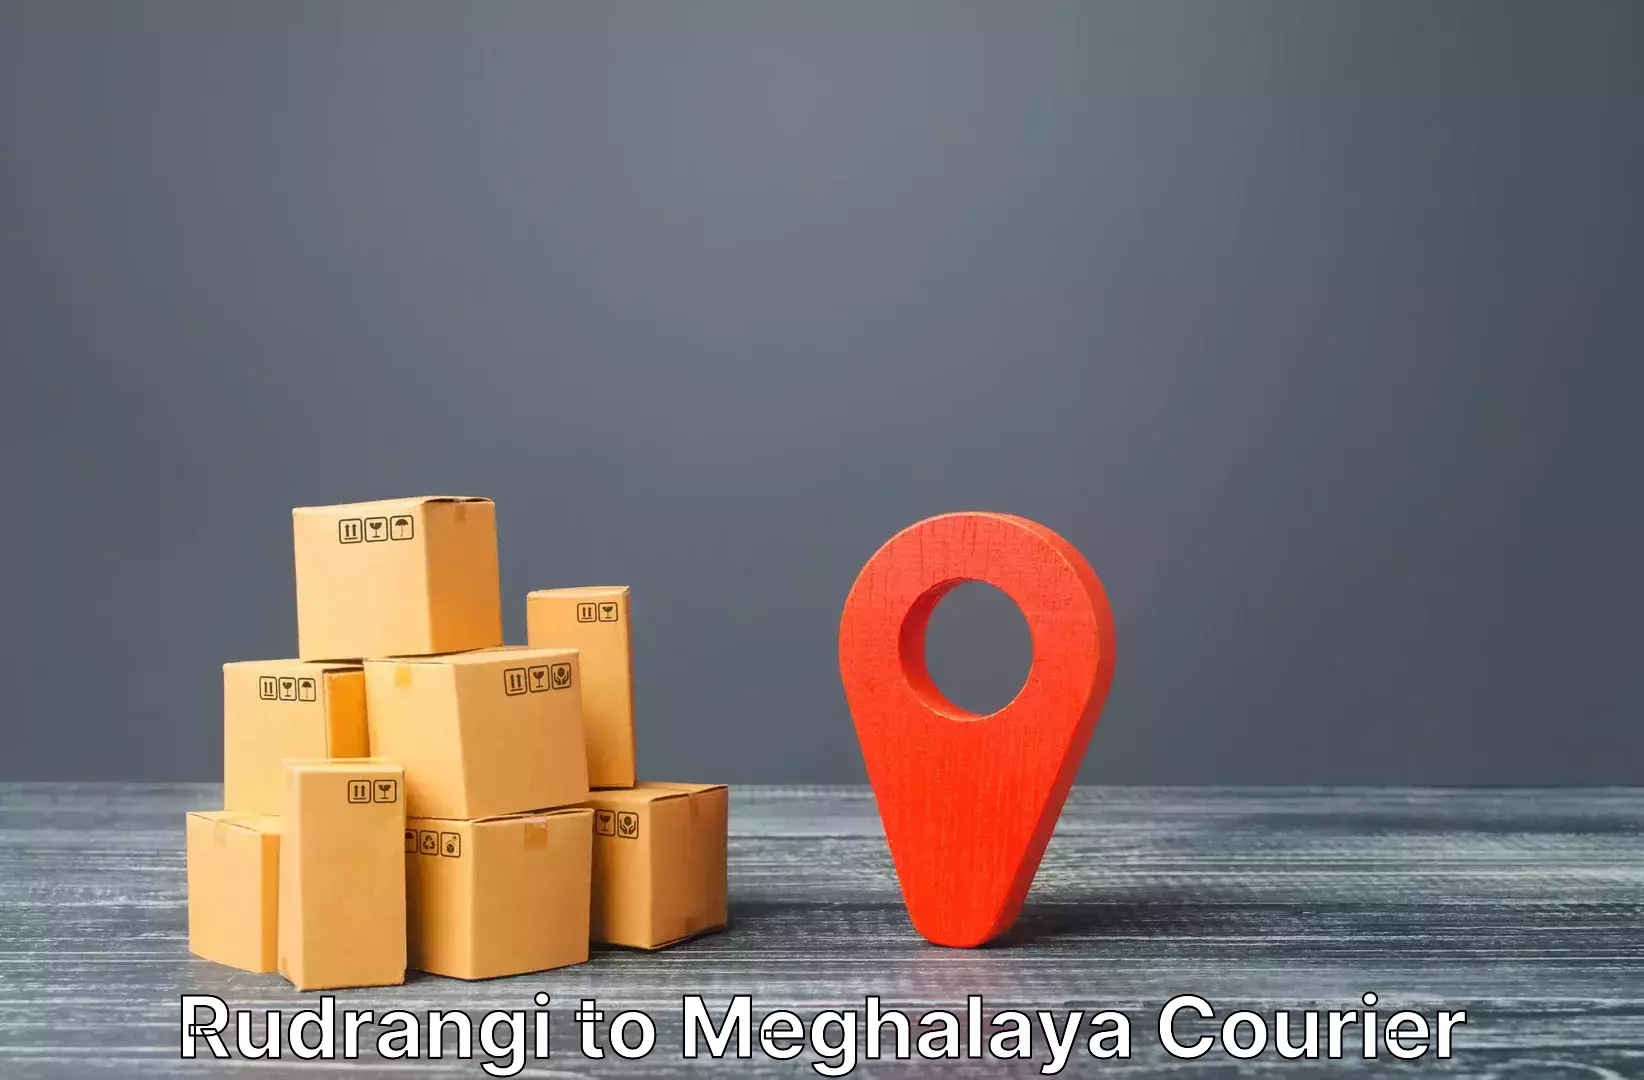 Luggage transport guidelines Rudrangi to Garobadha